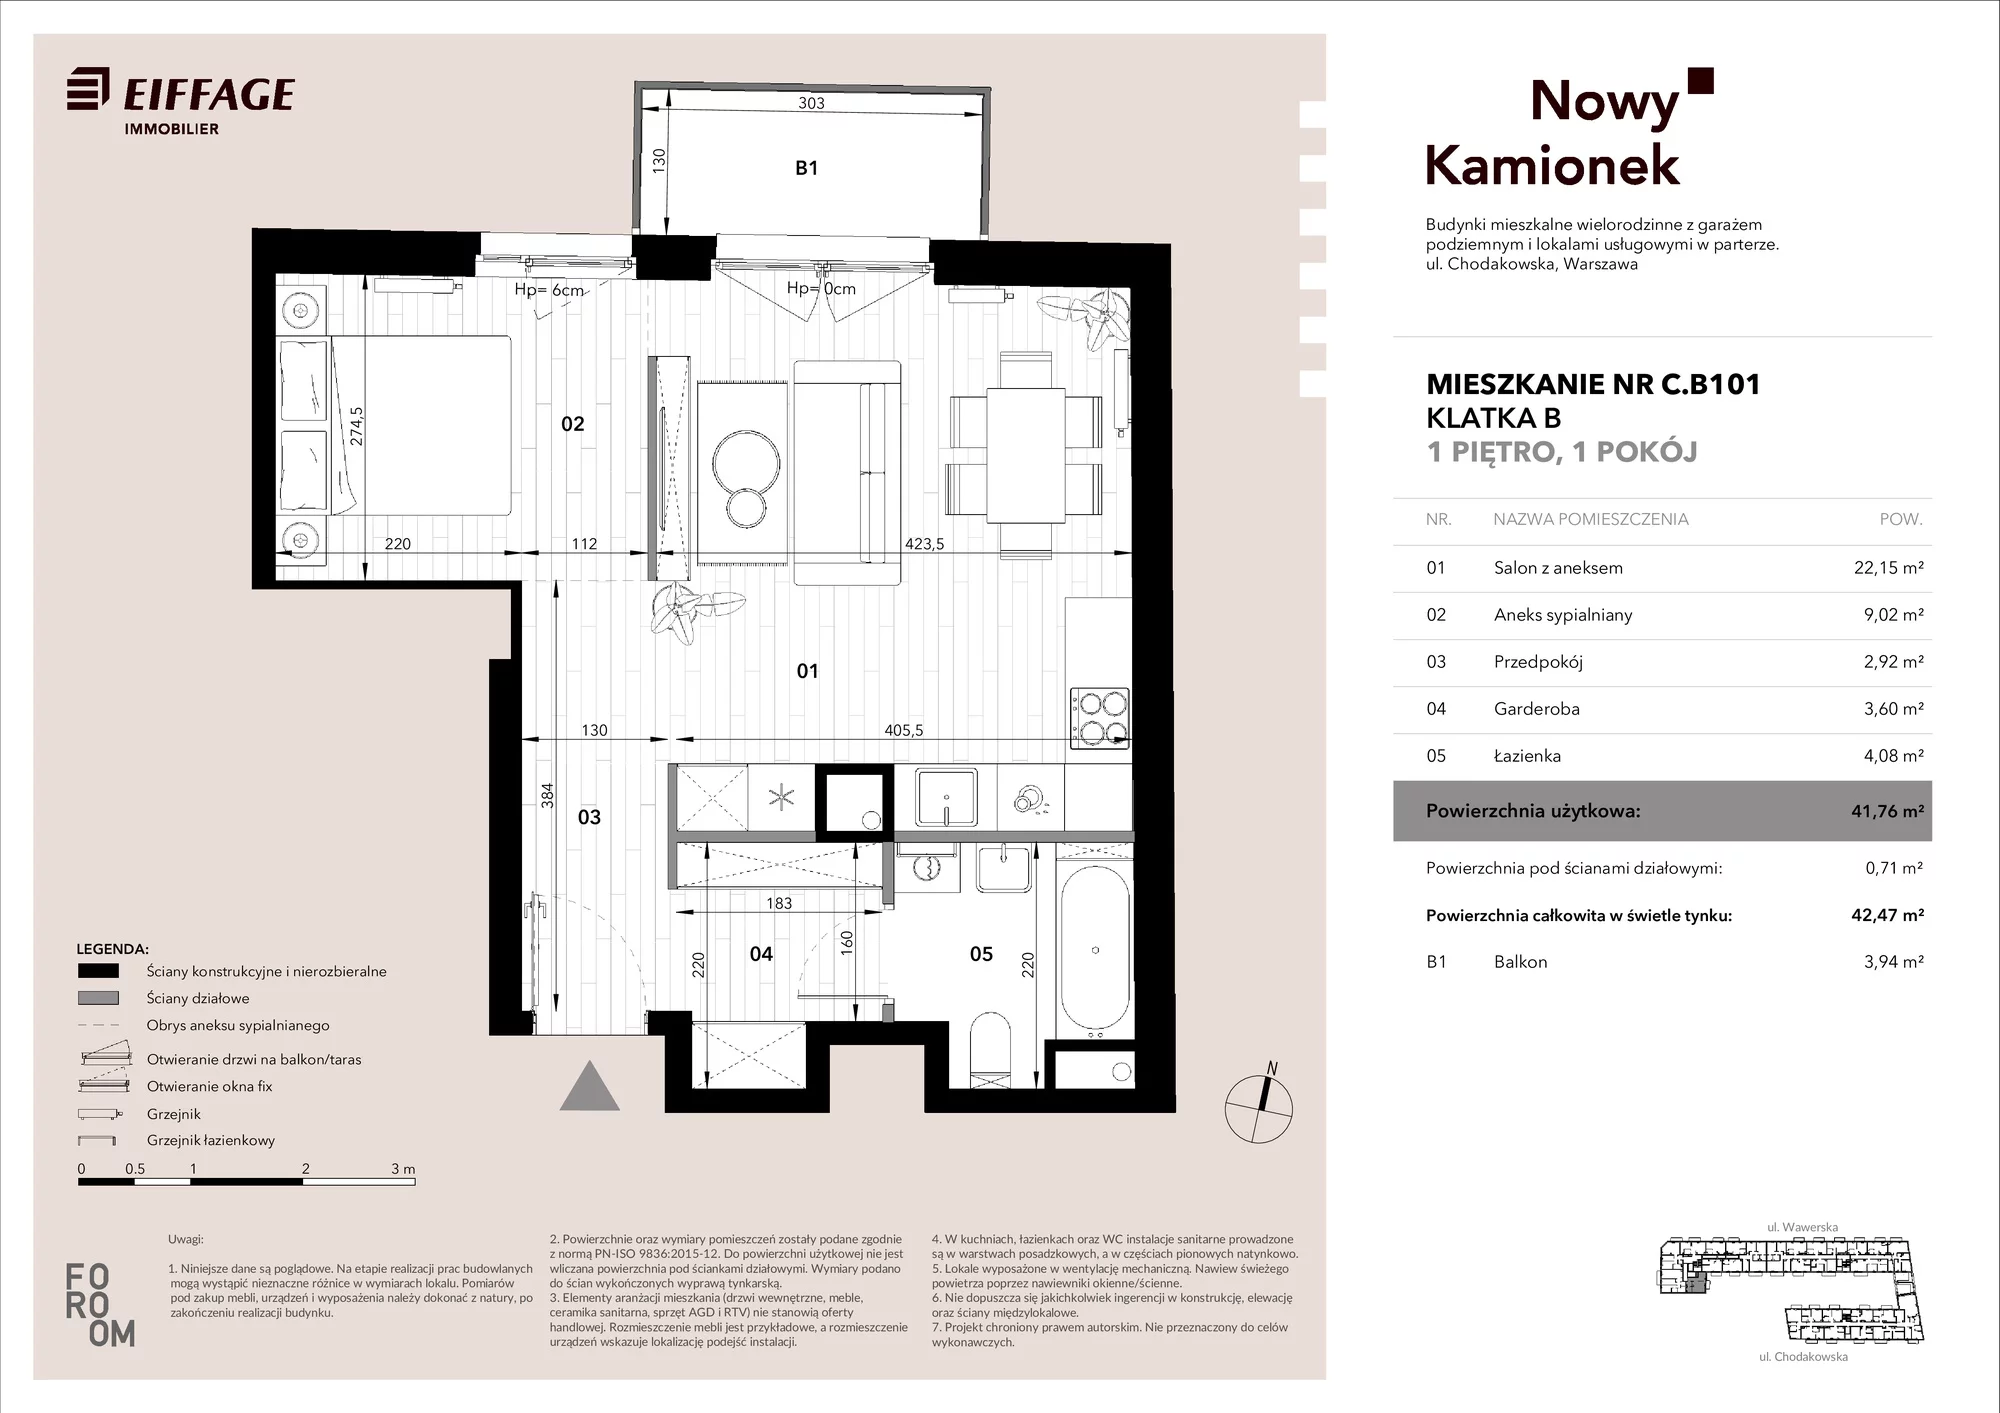 Mieszkanie 41,76 m², piętro 1, oferta nr C.B101, Nowy Kamionek, Warszawa, Praga Południe, Kamionek, ul. Chodakowska